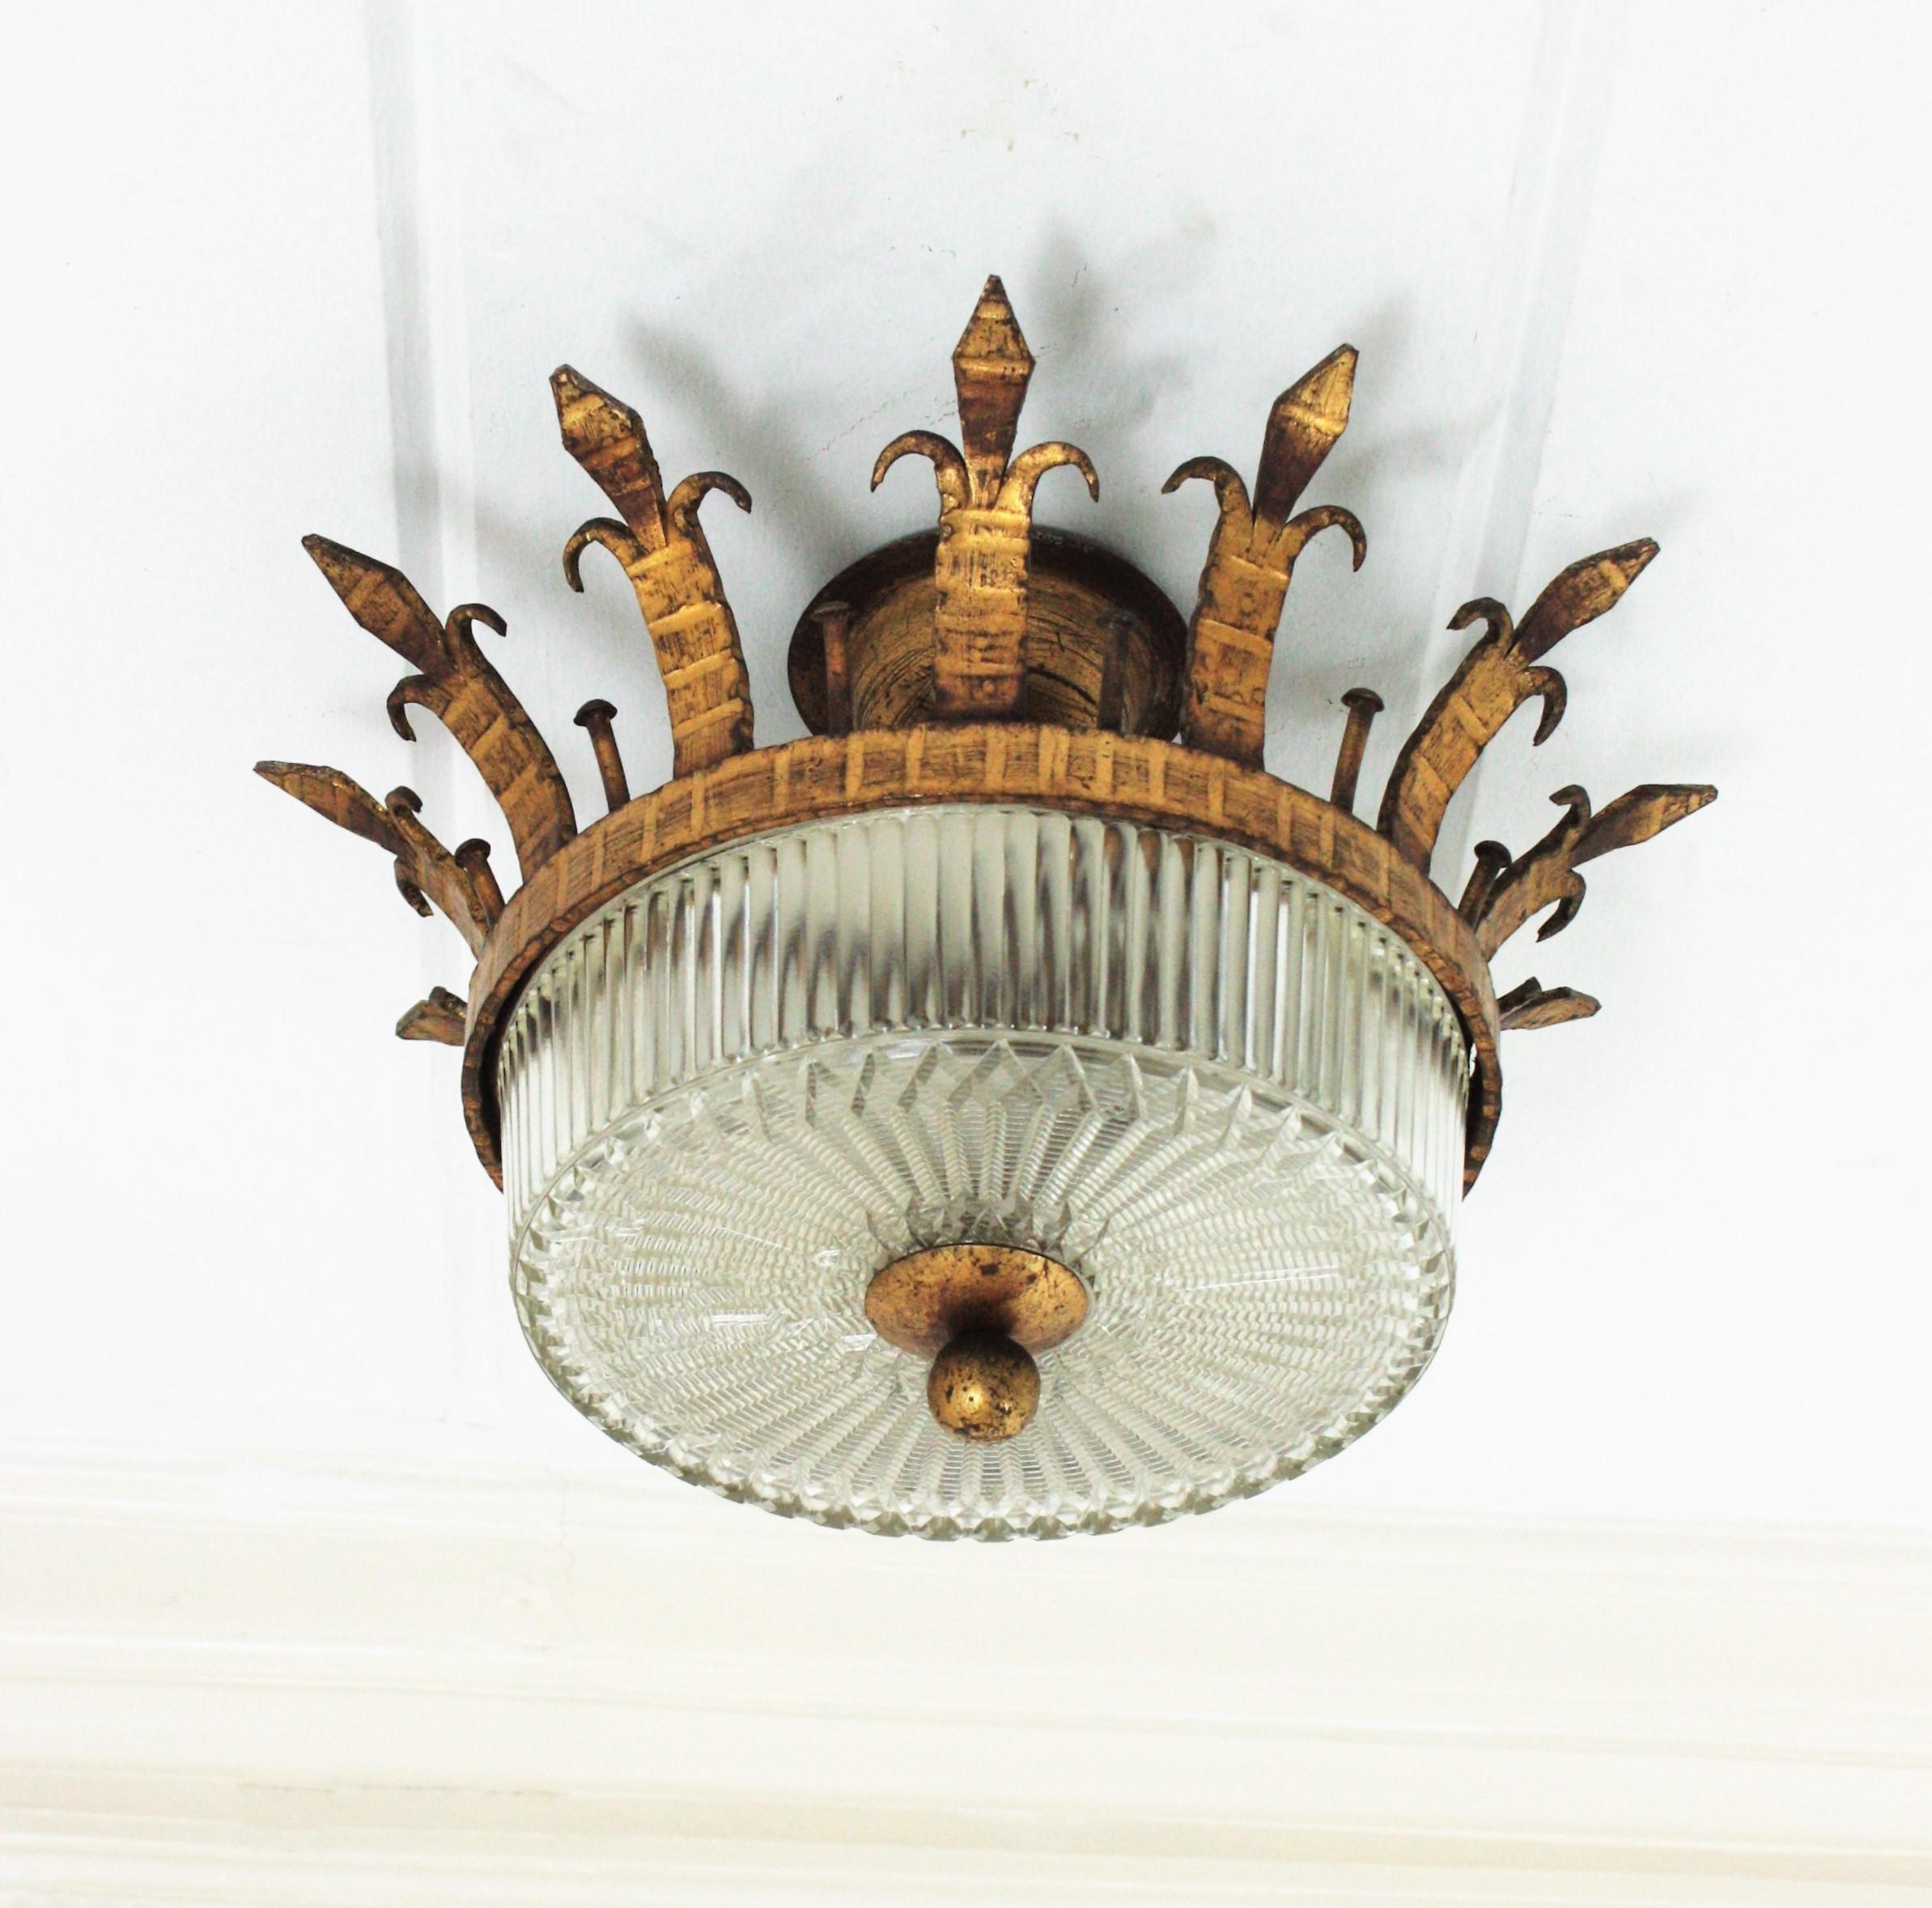 Monture à couronne en fer forgé et verre pressé, Espagne, années 1930-1940.
Un plafonnier sculptural en fer martelé à la main et en verre aux accents néoclassiques et gothiques. 
Ce luminaire en forme de couronne en fer forgé et doré est doté d'un